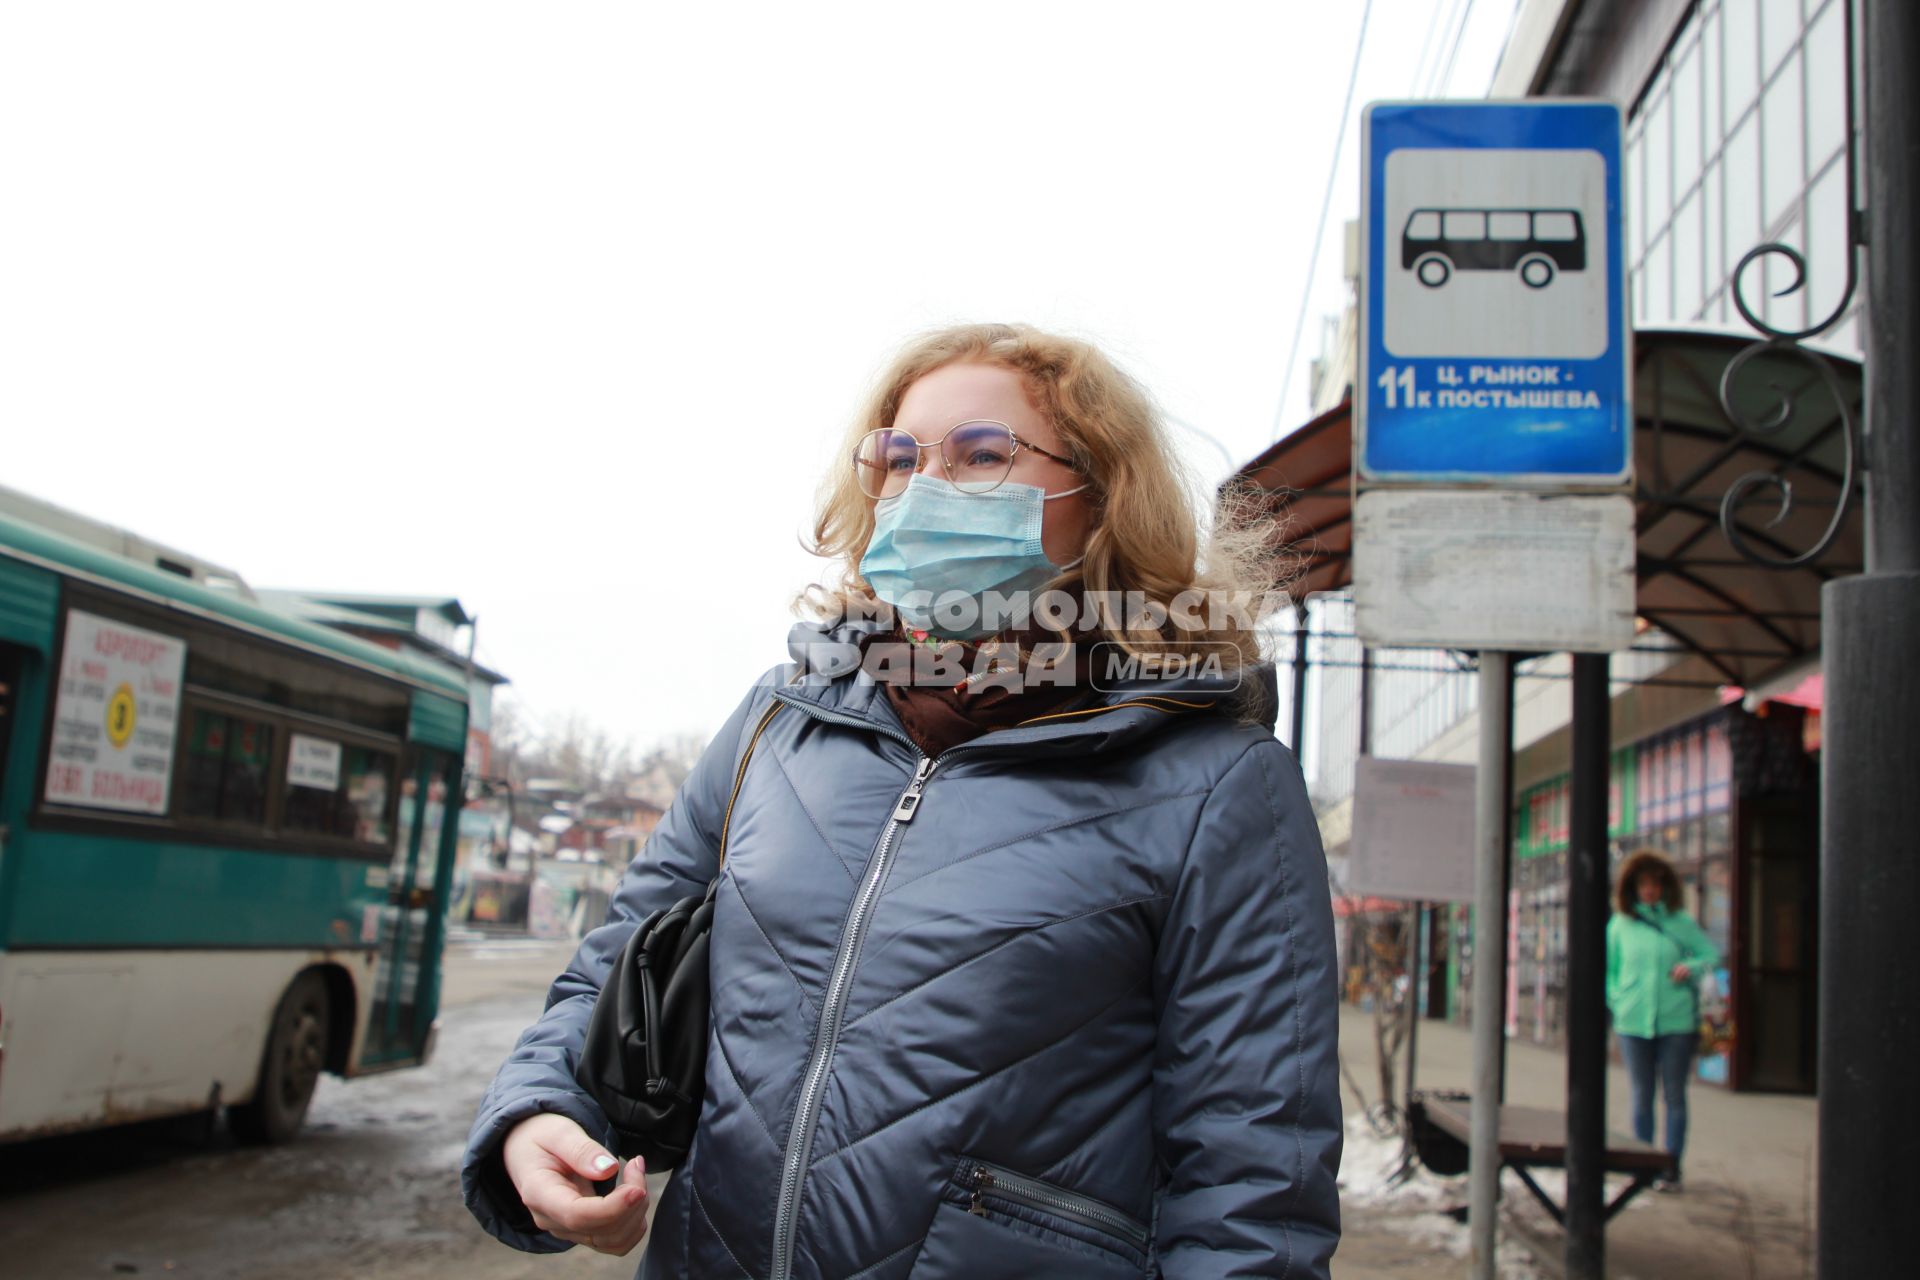 Иркутск. Девушка в медицинской маске  на остановке  общественного транспорта.